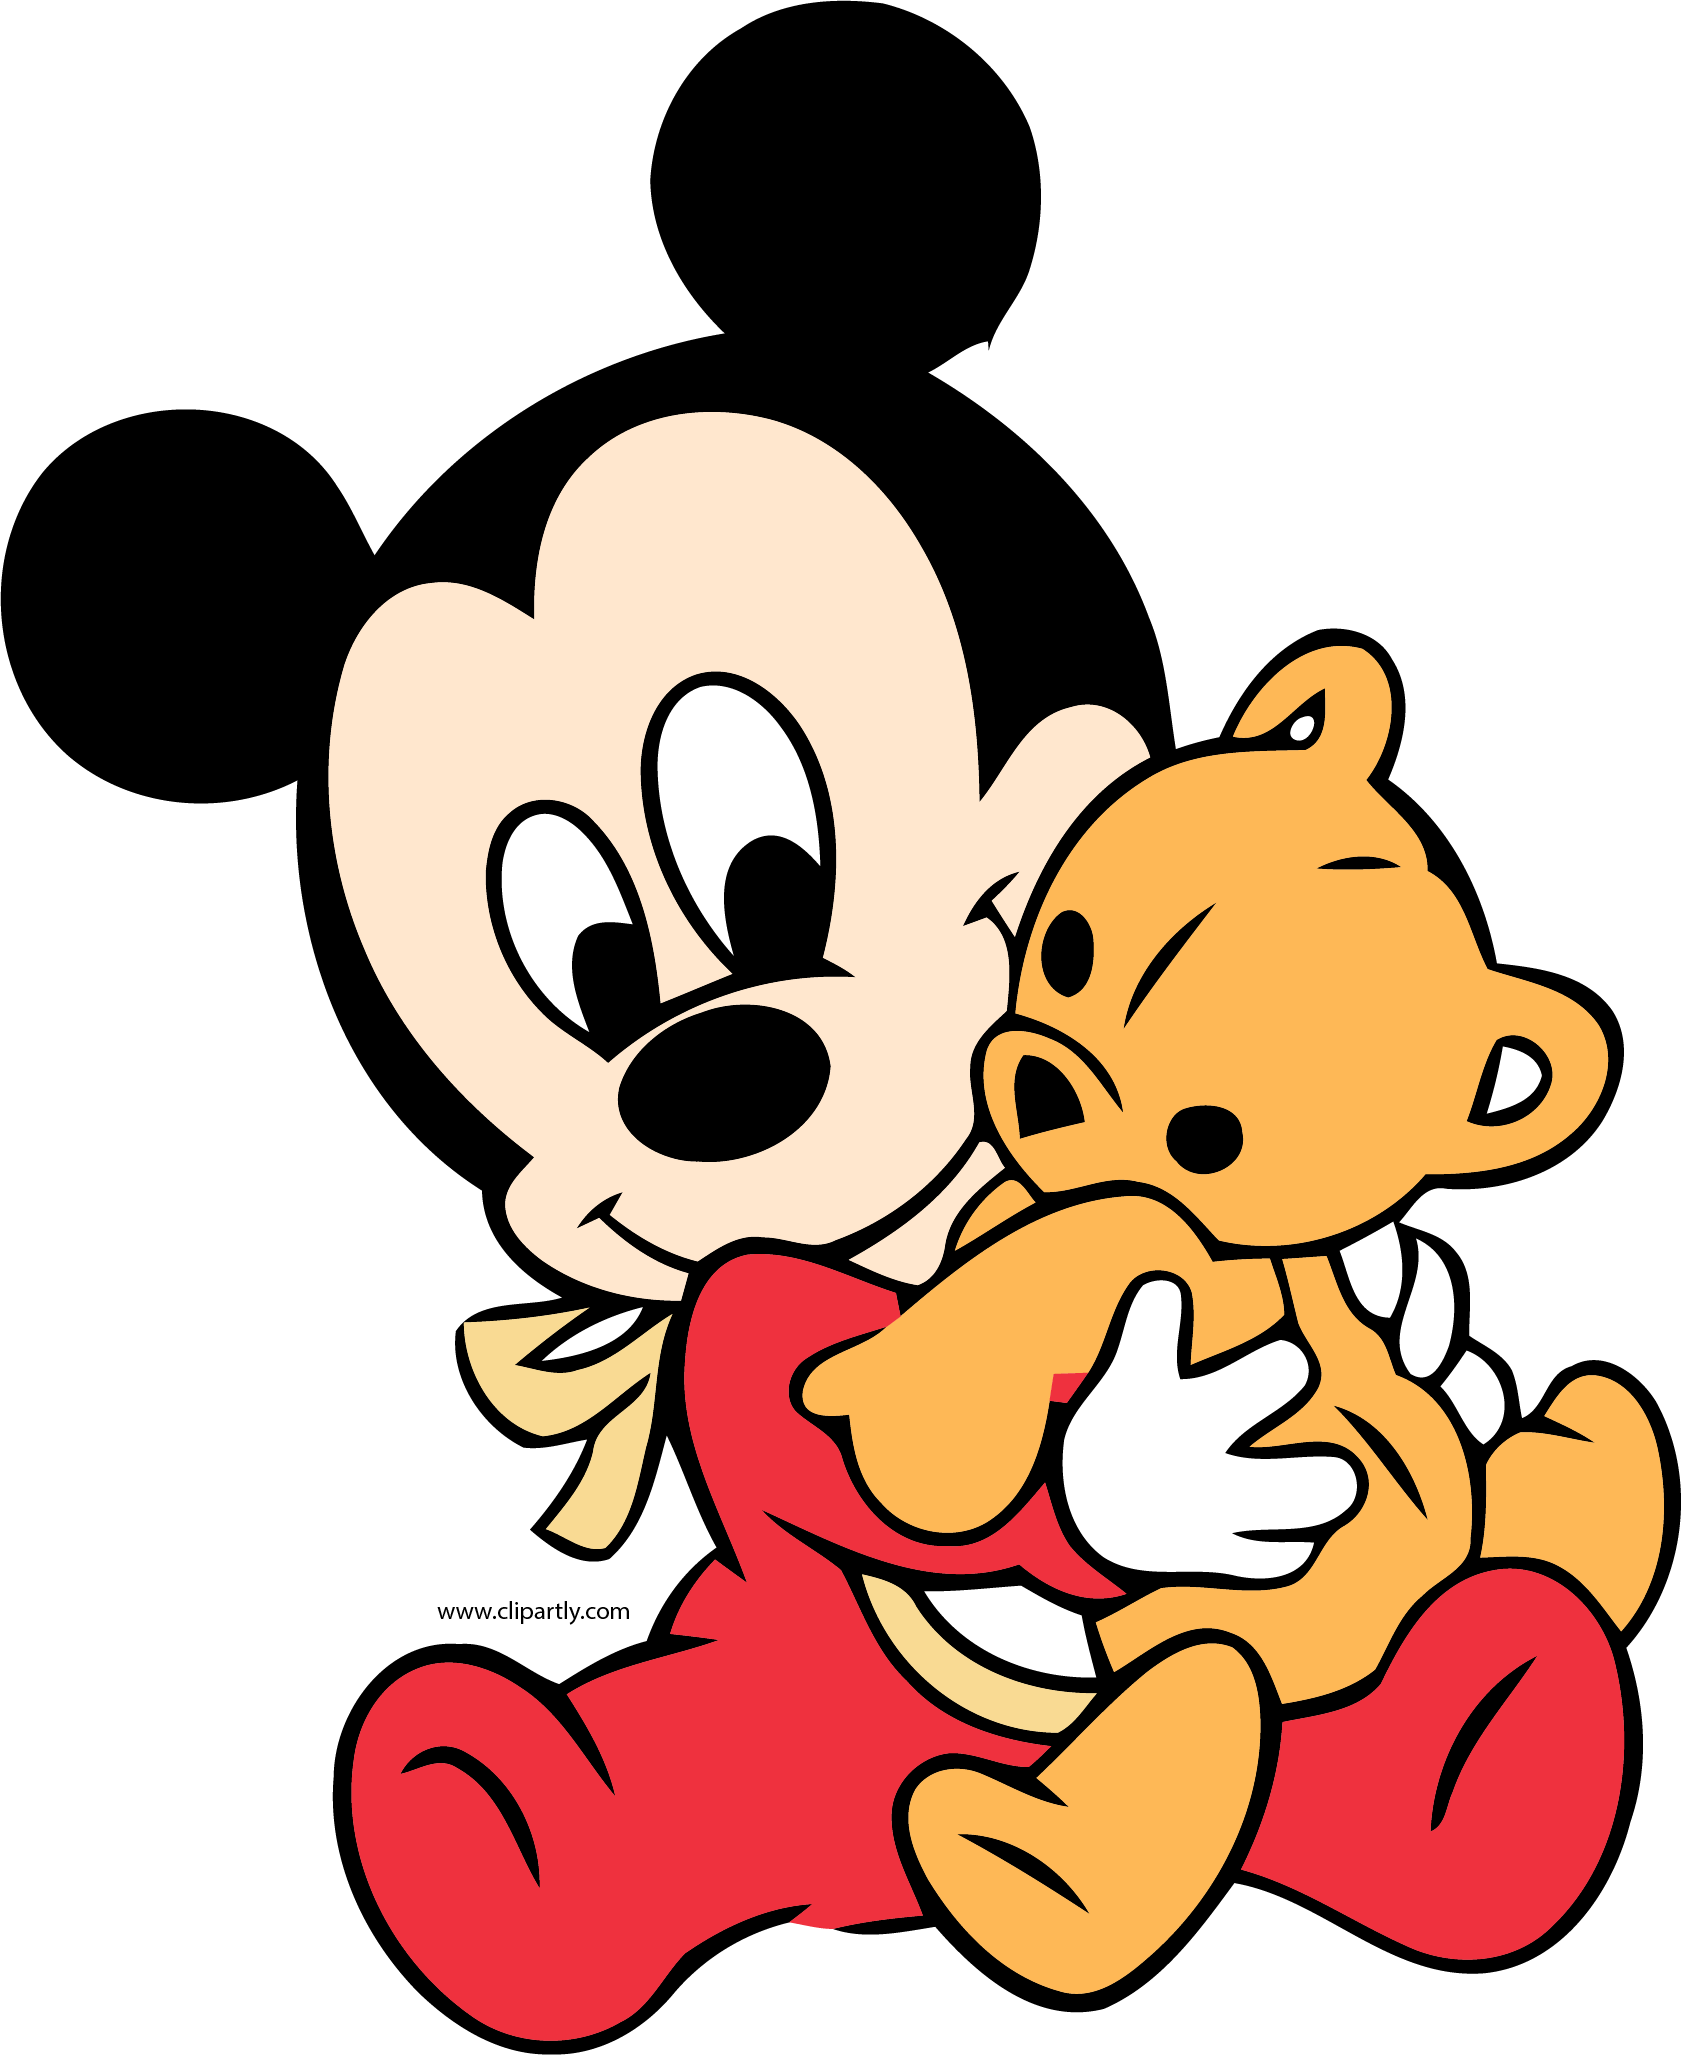 Cartoon Character Holding A Teddy Bear